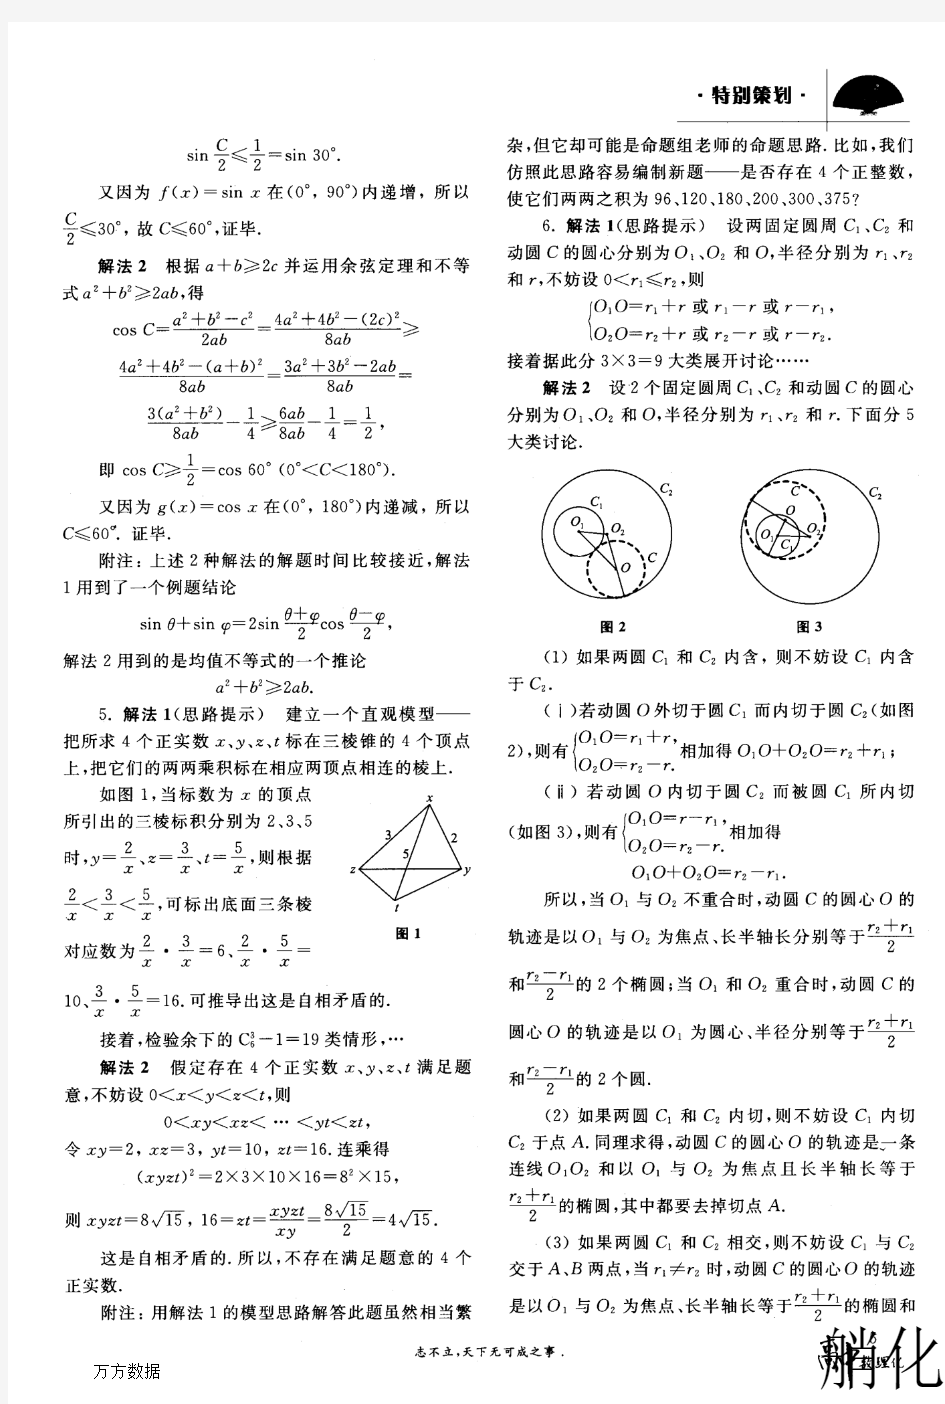 2011年北京大学等13所大学自主招生数学试题解答